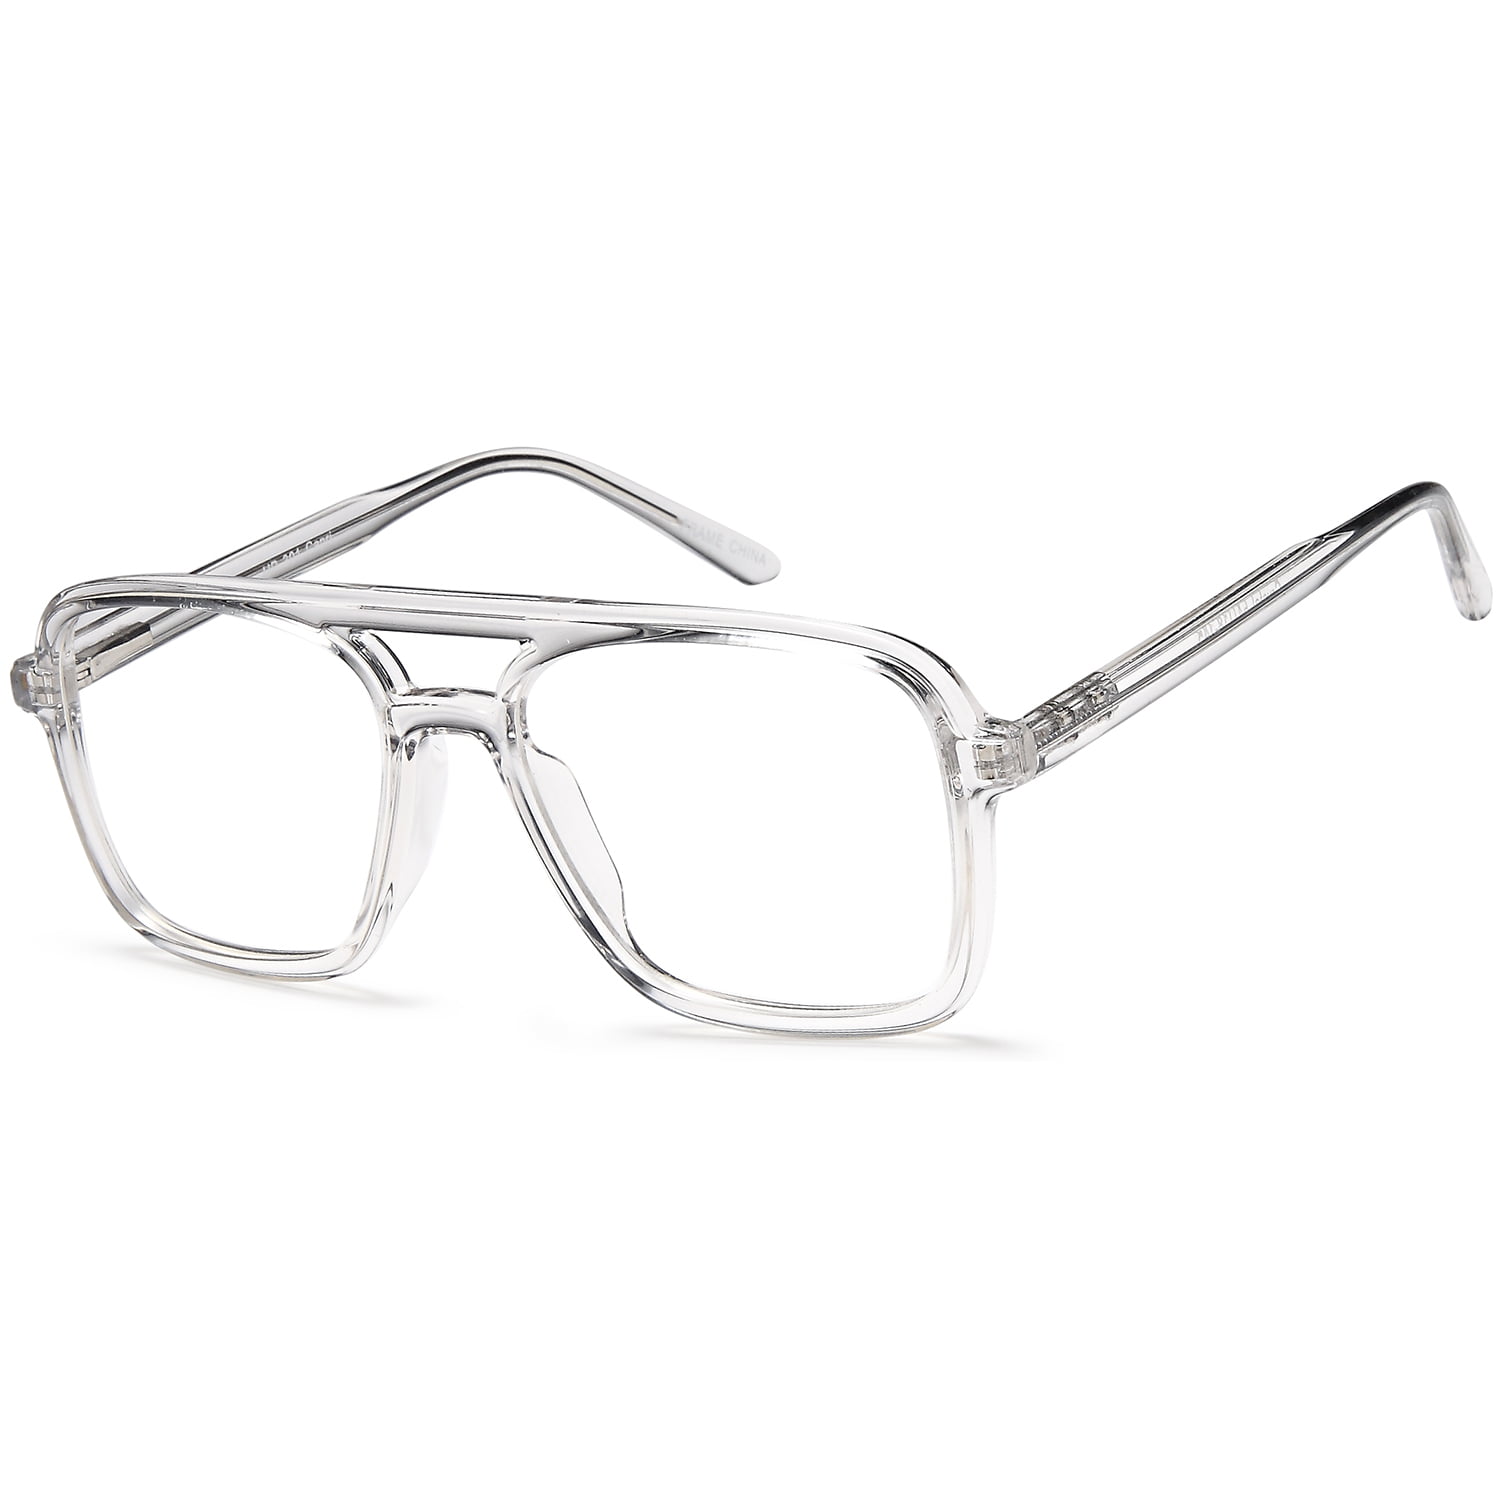 Unisex Eyeglasses 54 18 145 Crystal Plastic - Walmart.com